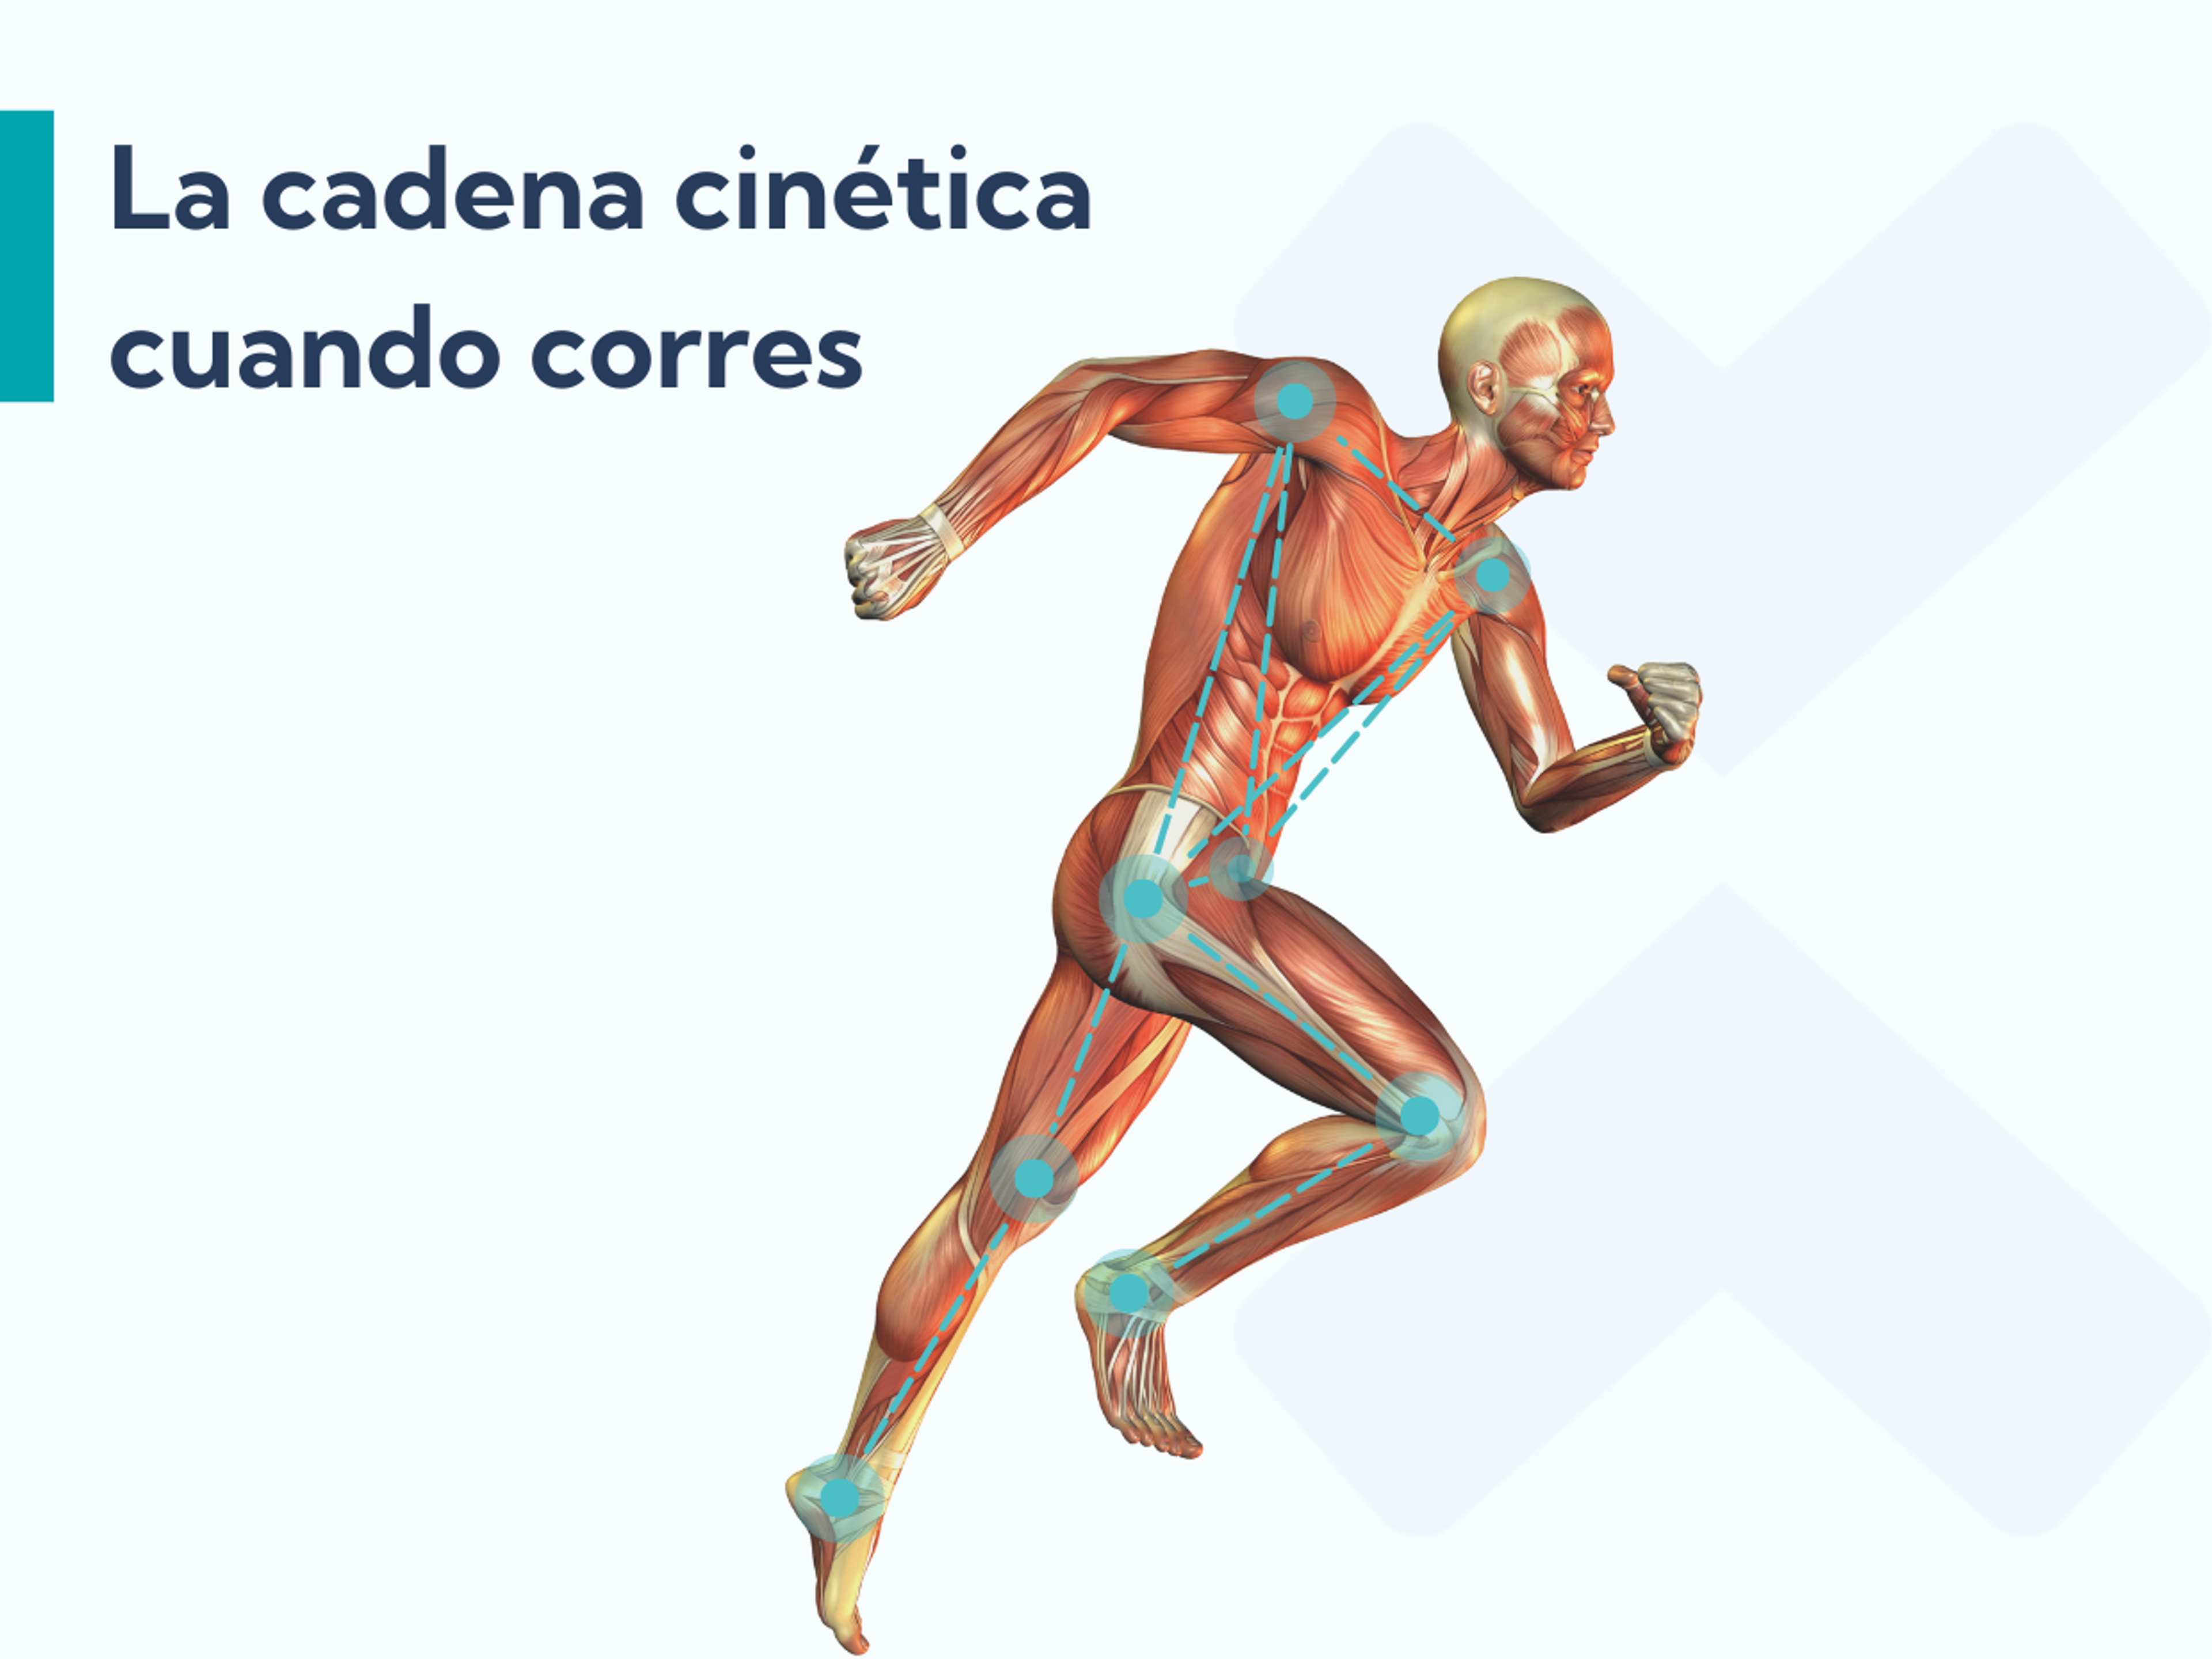 Los ejercicios para cadera son de gran ayuda para tratar la fascitis plantar porque mejoran el funcionamiento de la cadena cinética cuando corres.